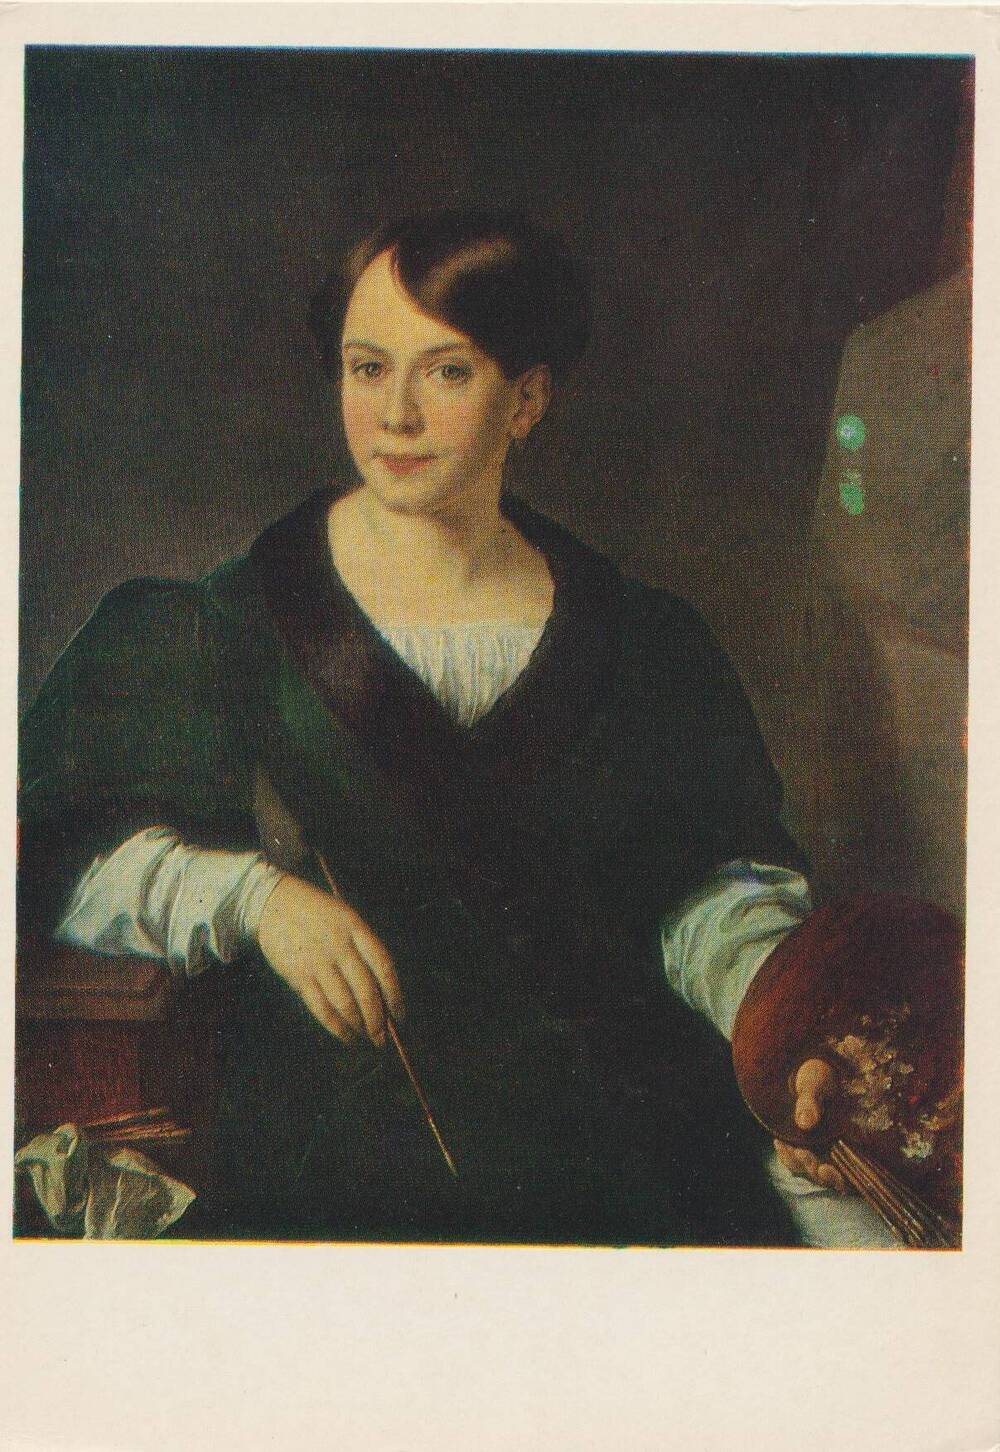 Открытка художественная. В.А. Тропинин (1780-1857). Портрет Л.С. Бороздны. 1831.